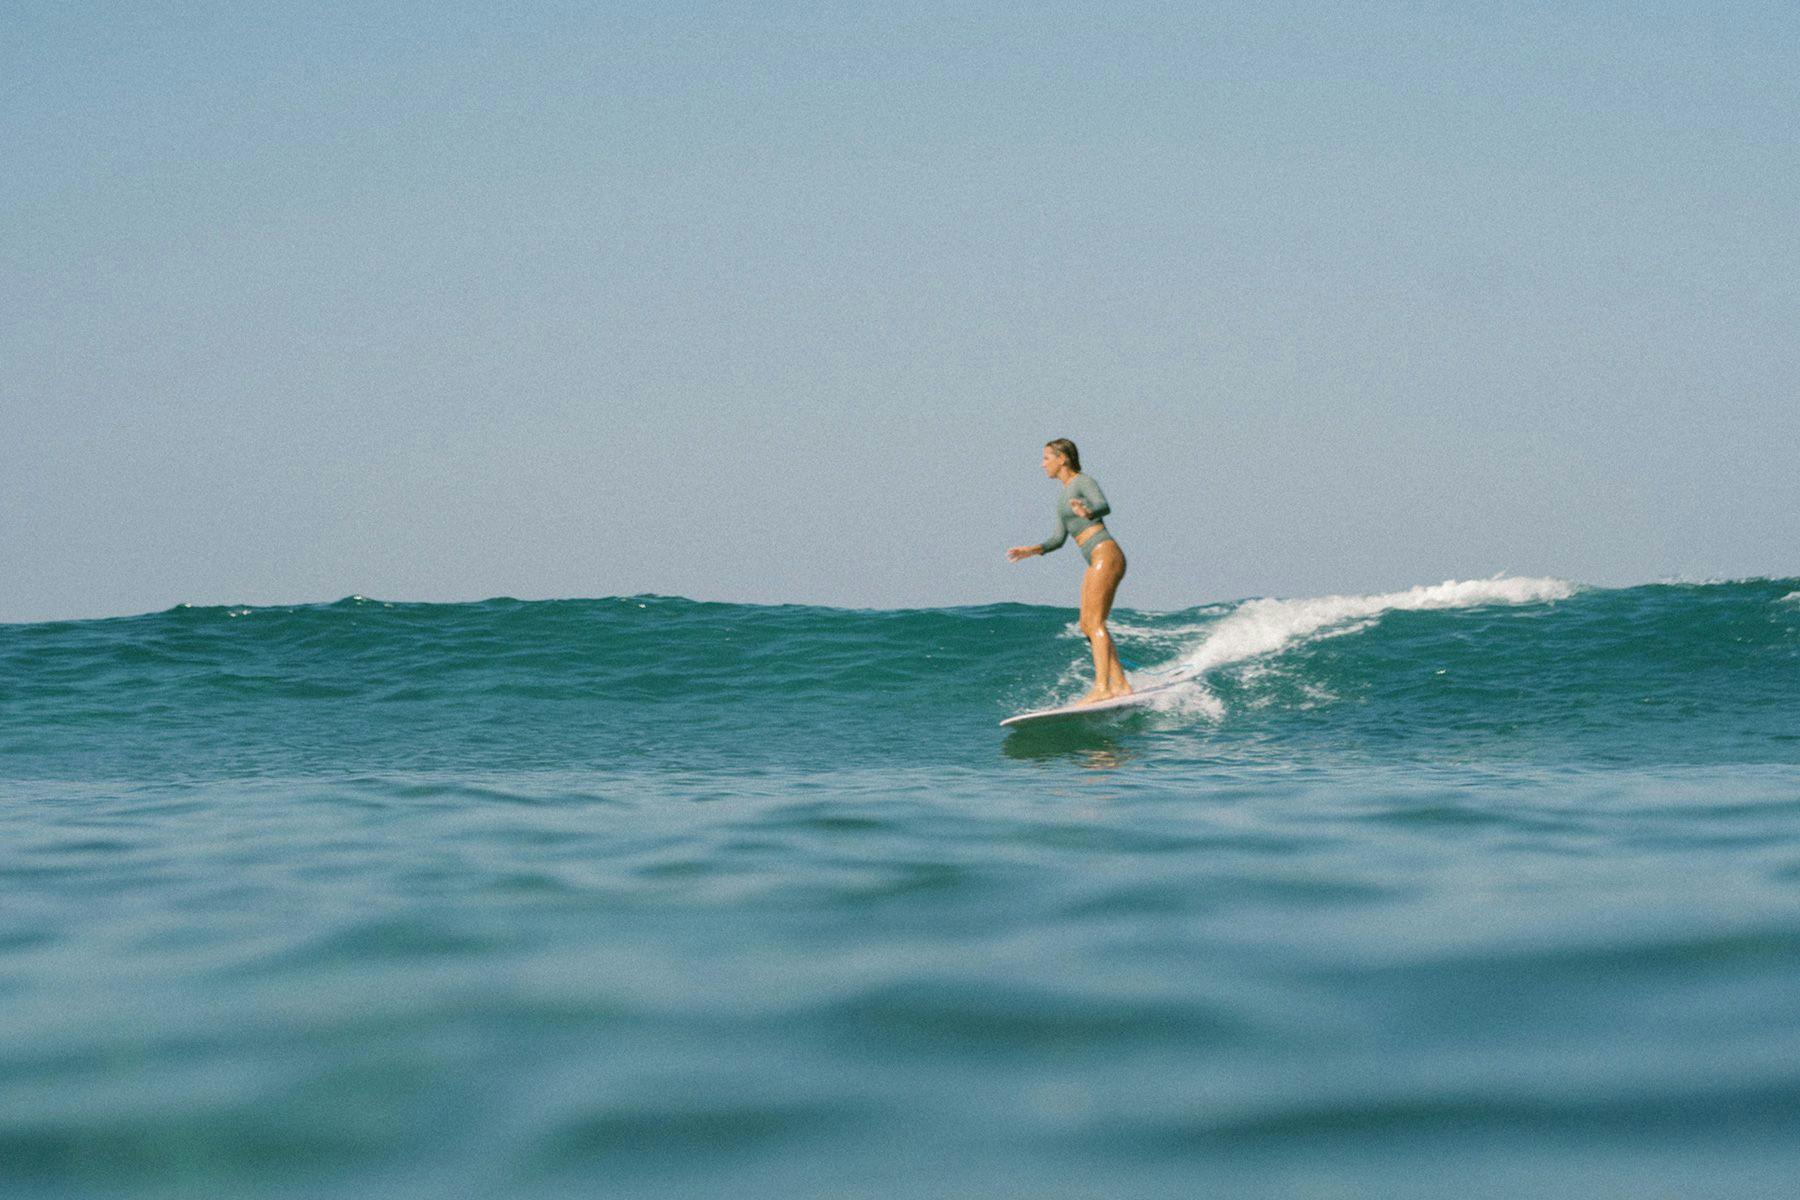 noserider surf club founder emma bukowski surfing in indonesia